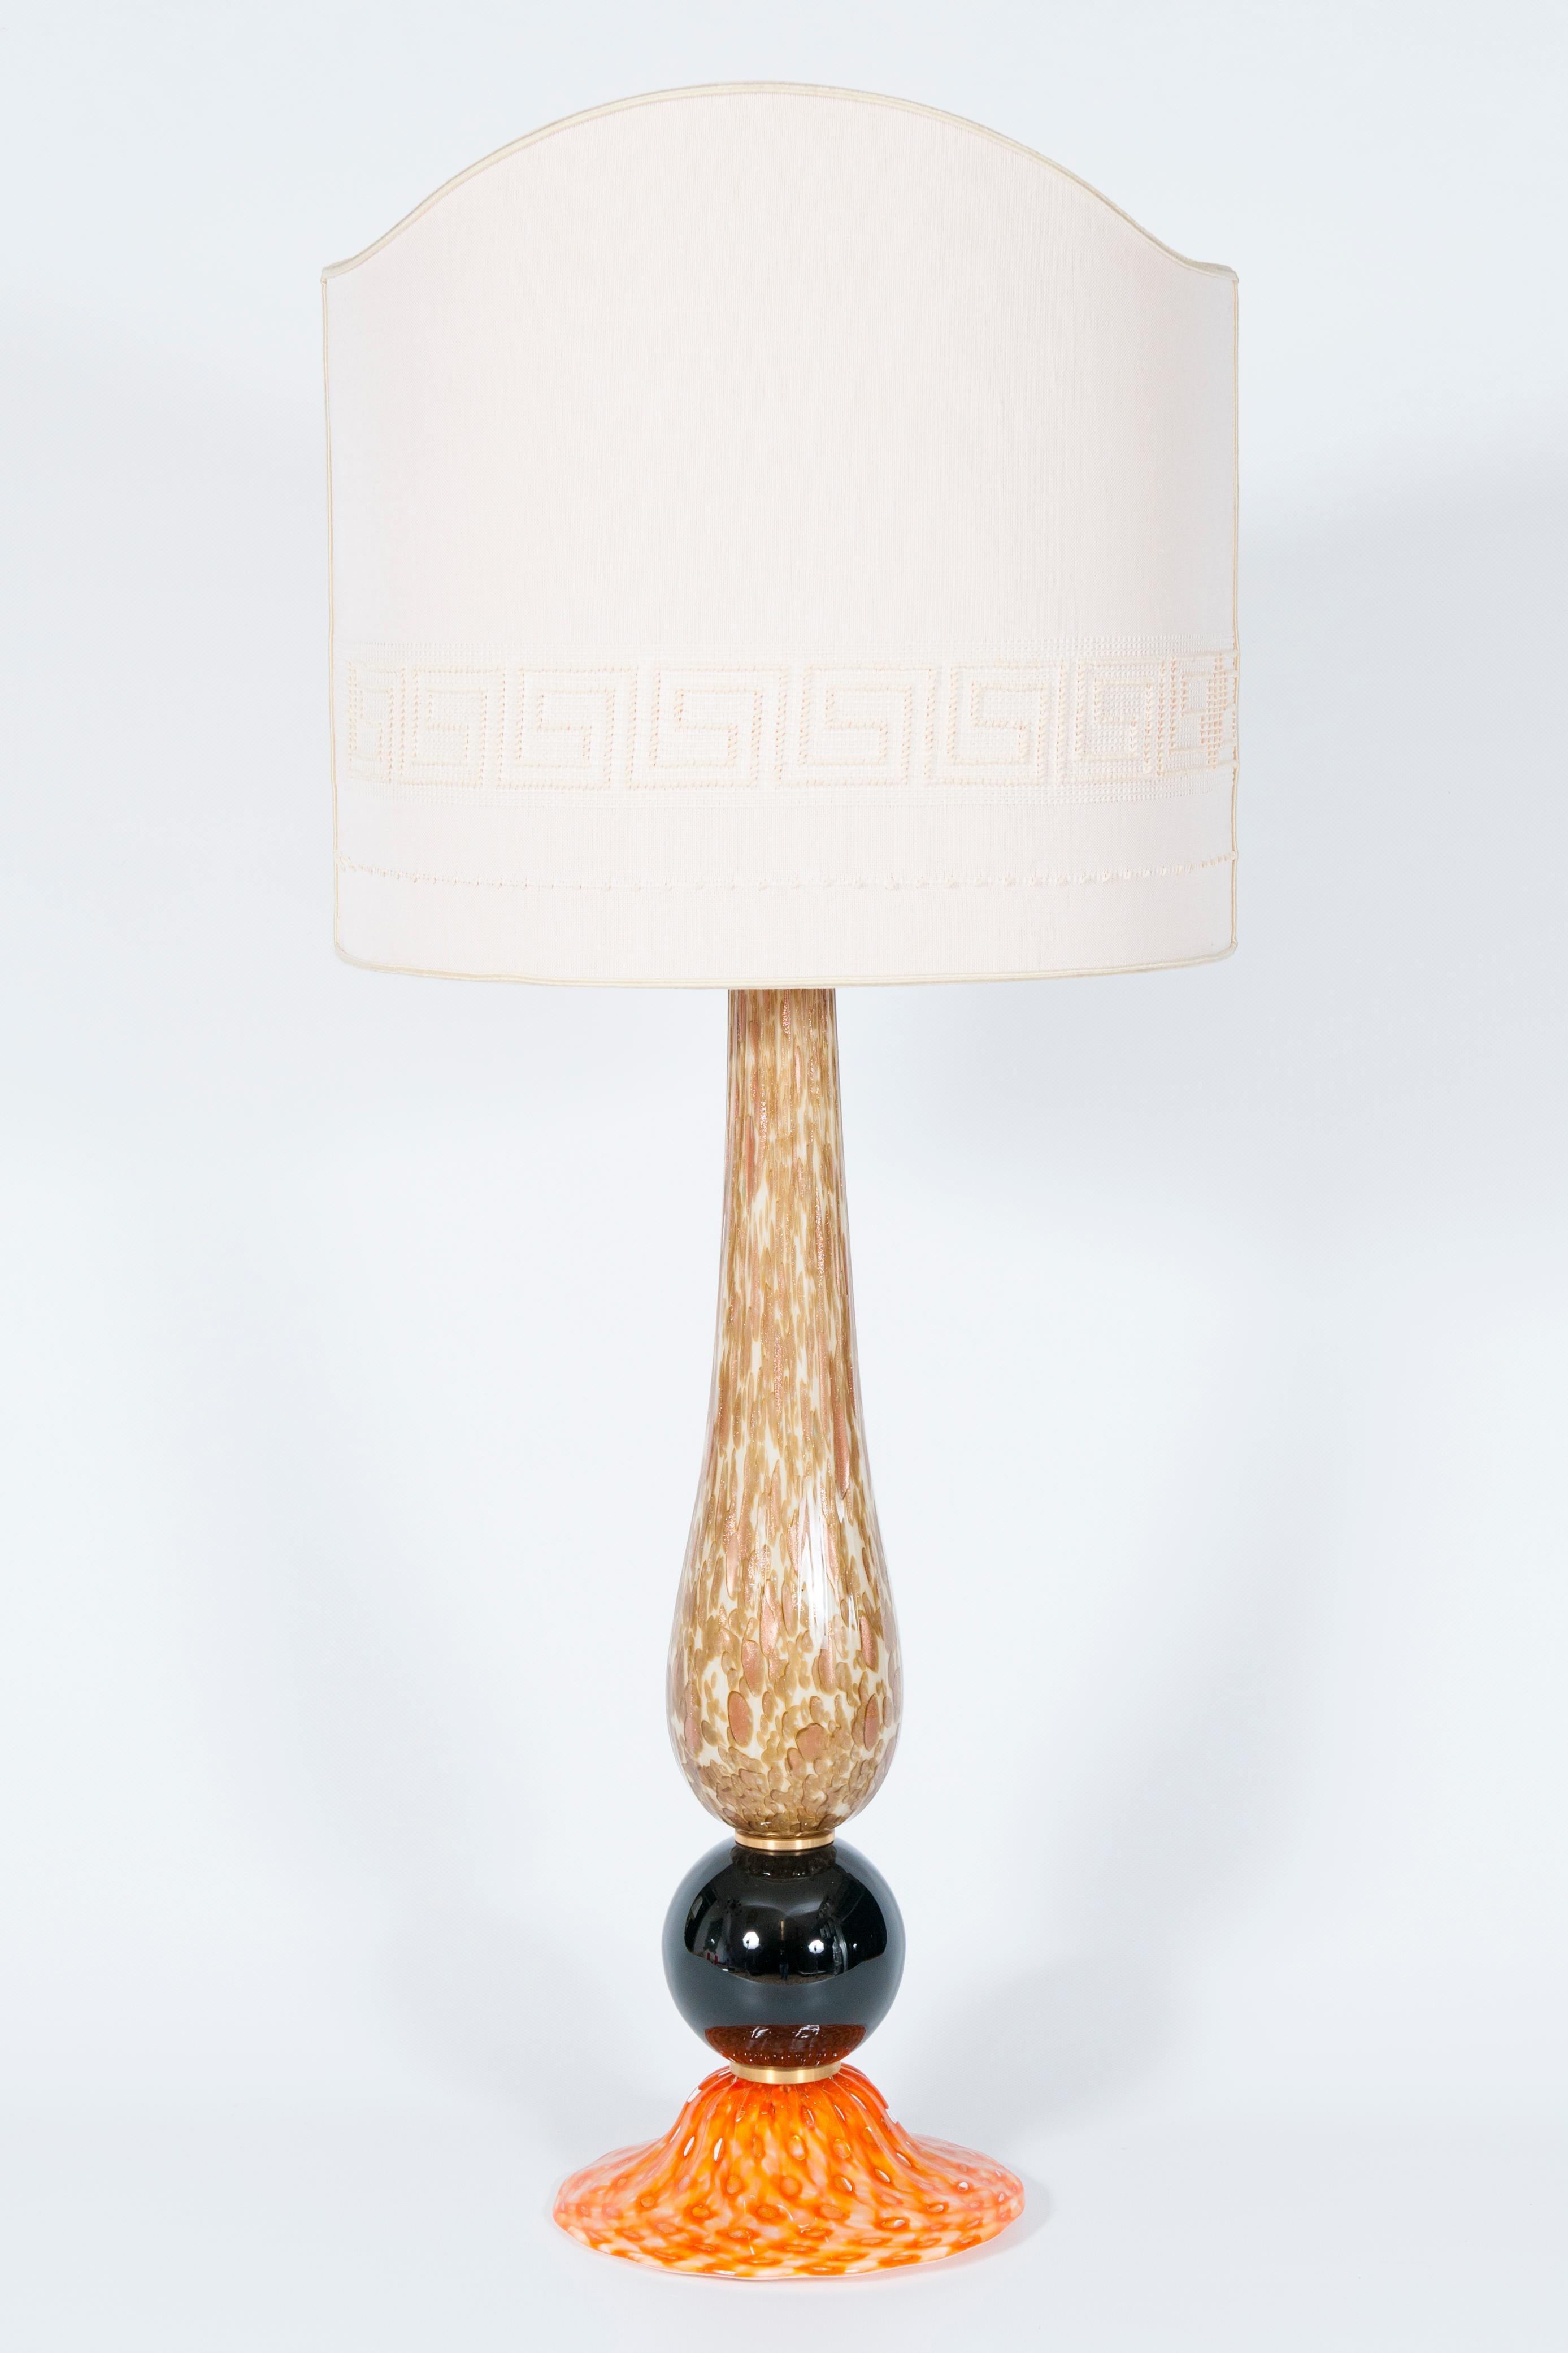 Lampe de table Murano vibrant basement Orange Brown & White stem 1980 Italie.
Une lampe de table envoûtante en verre soufflé de Murano, méticuleusement fabriquée par les artisans de l'artiste italien Giovanni Dalla Fina, qui perpétuent l'héritage de